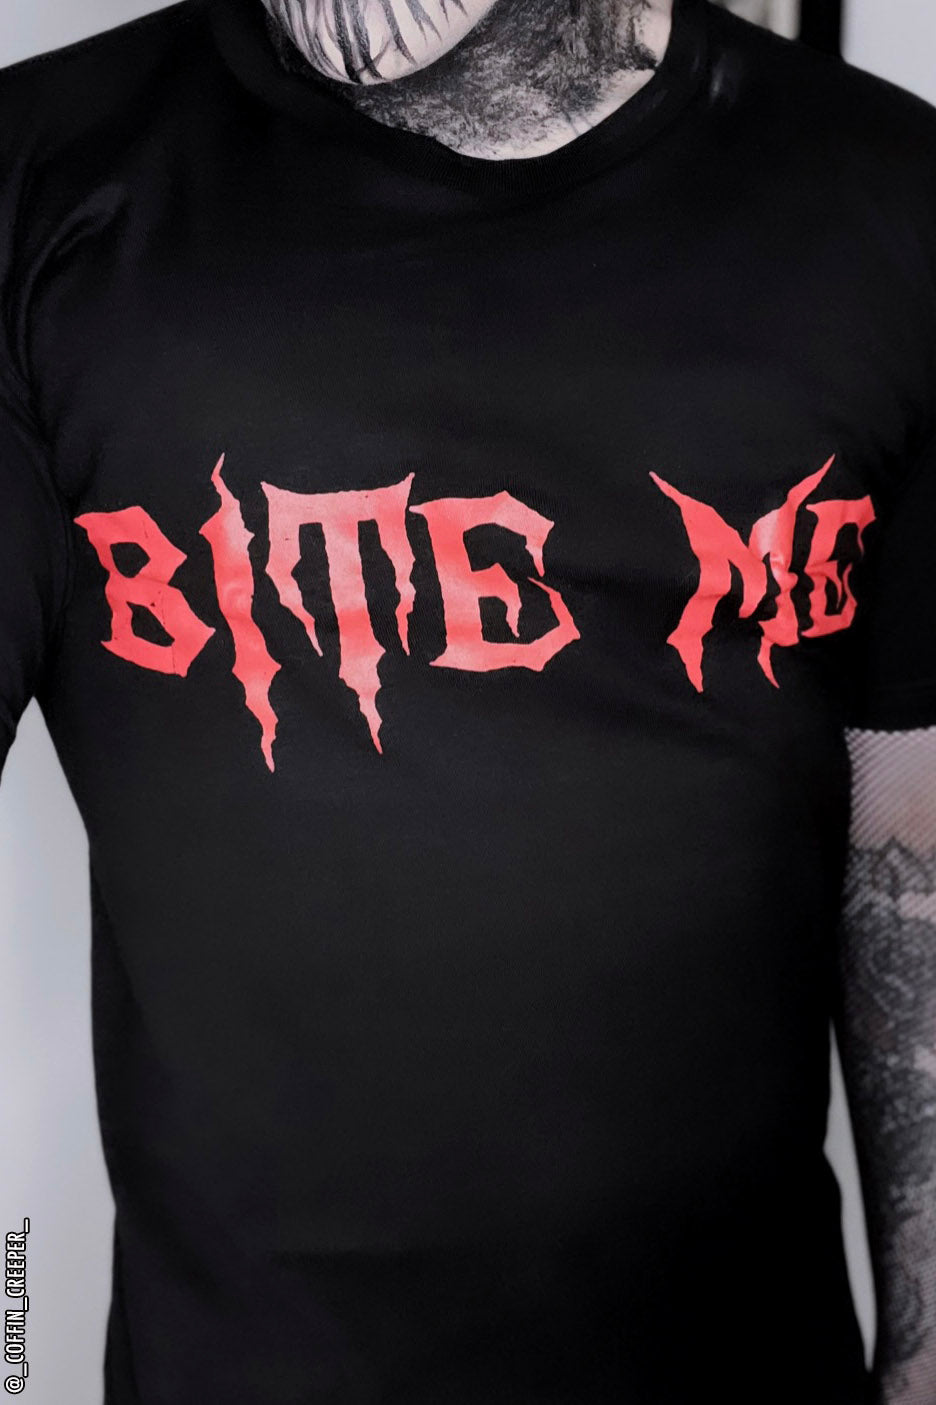 Bite Me T-shirt